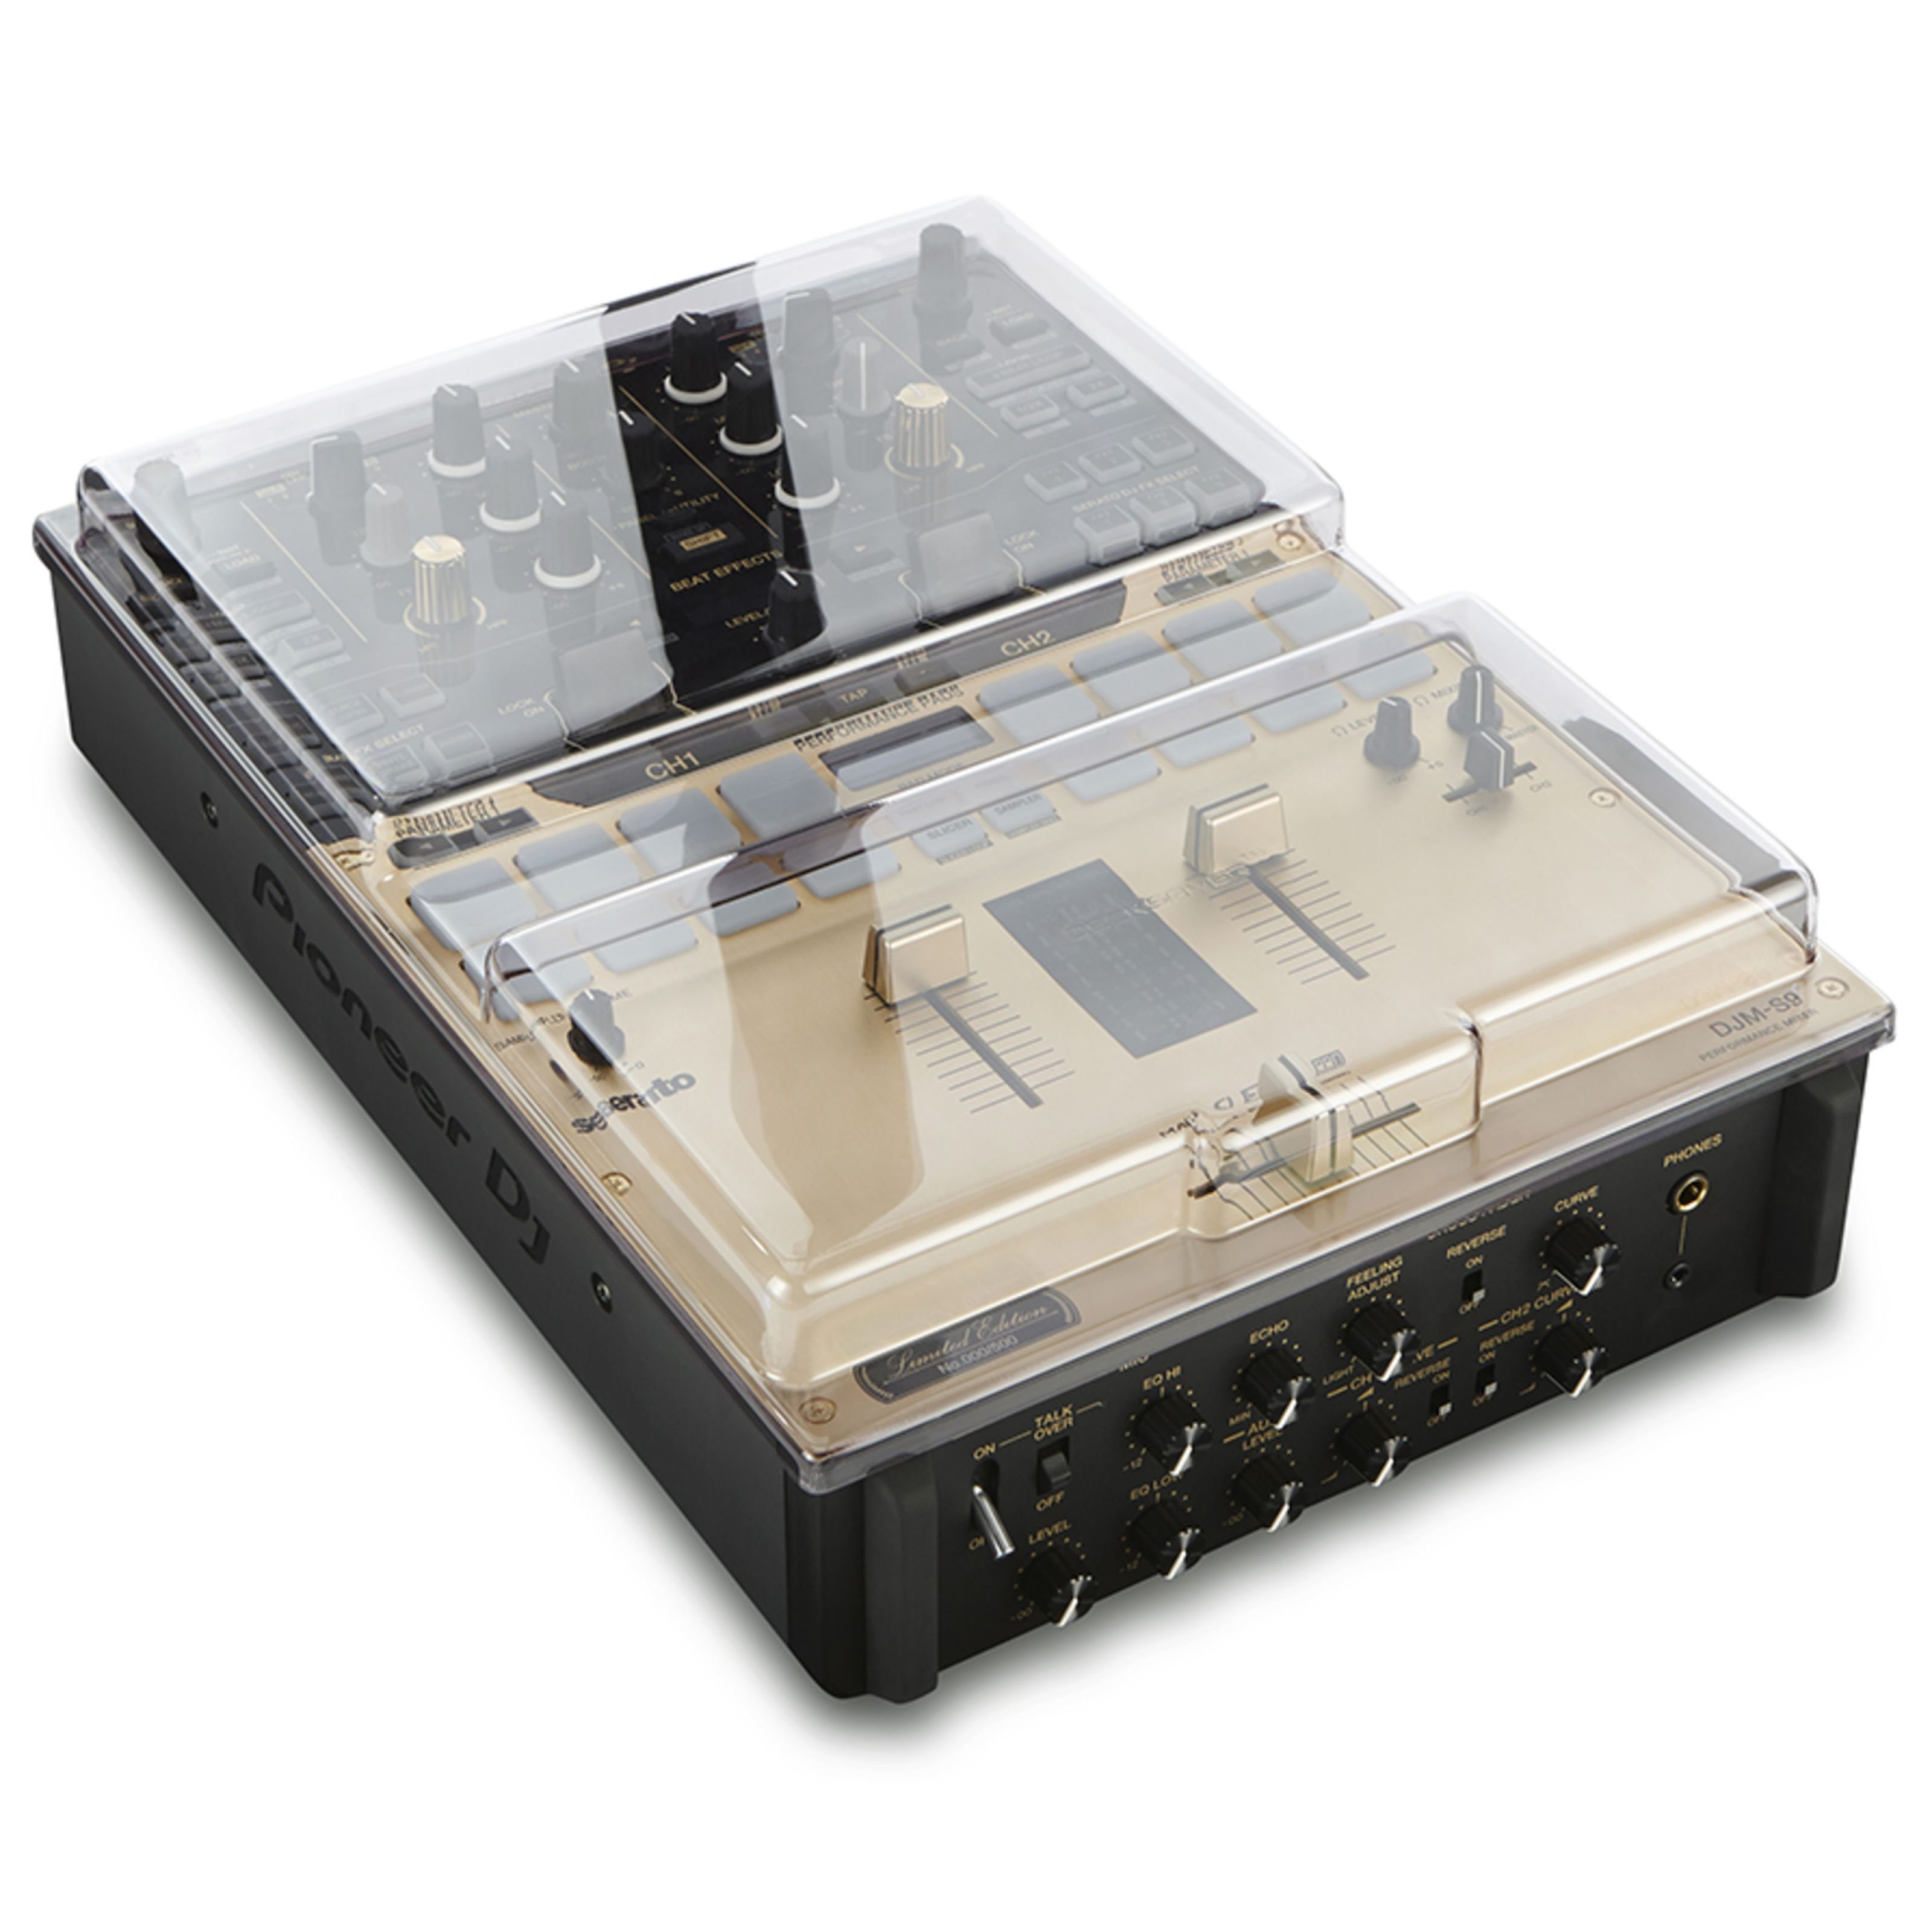 Spielzeug-Musikinstrument, Pioneer Cover - DJM-S9 Decksaver für Equipment Cover DJ